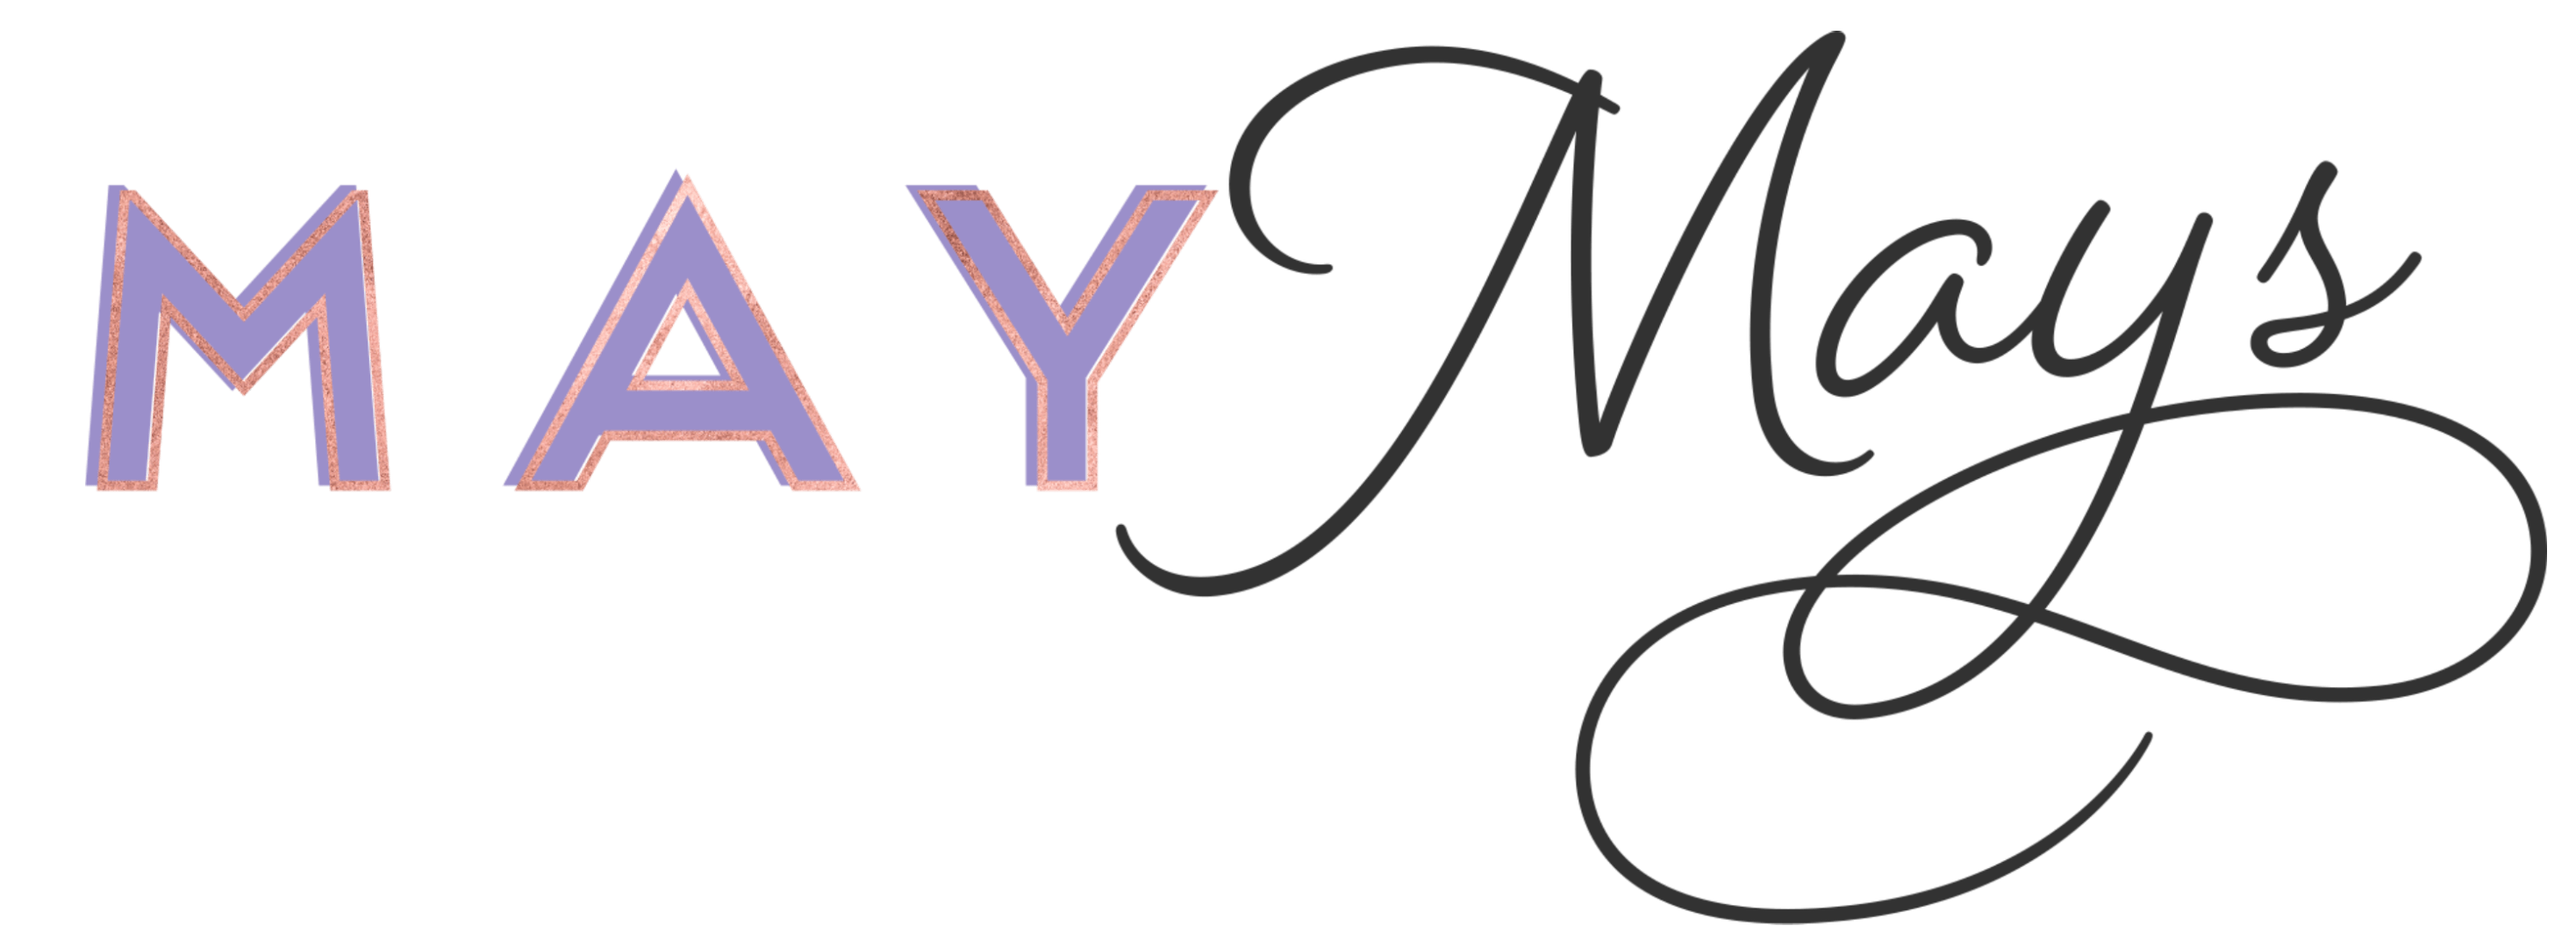 May Mays logo